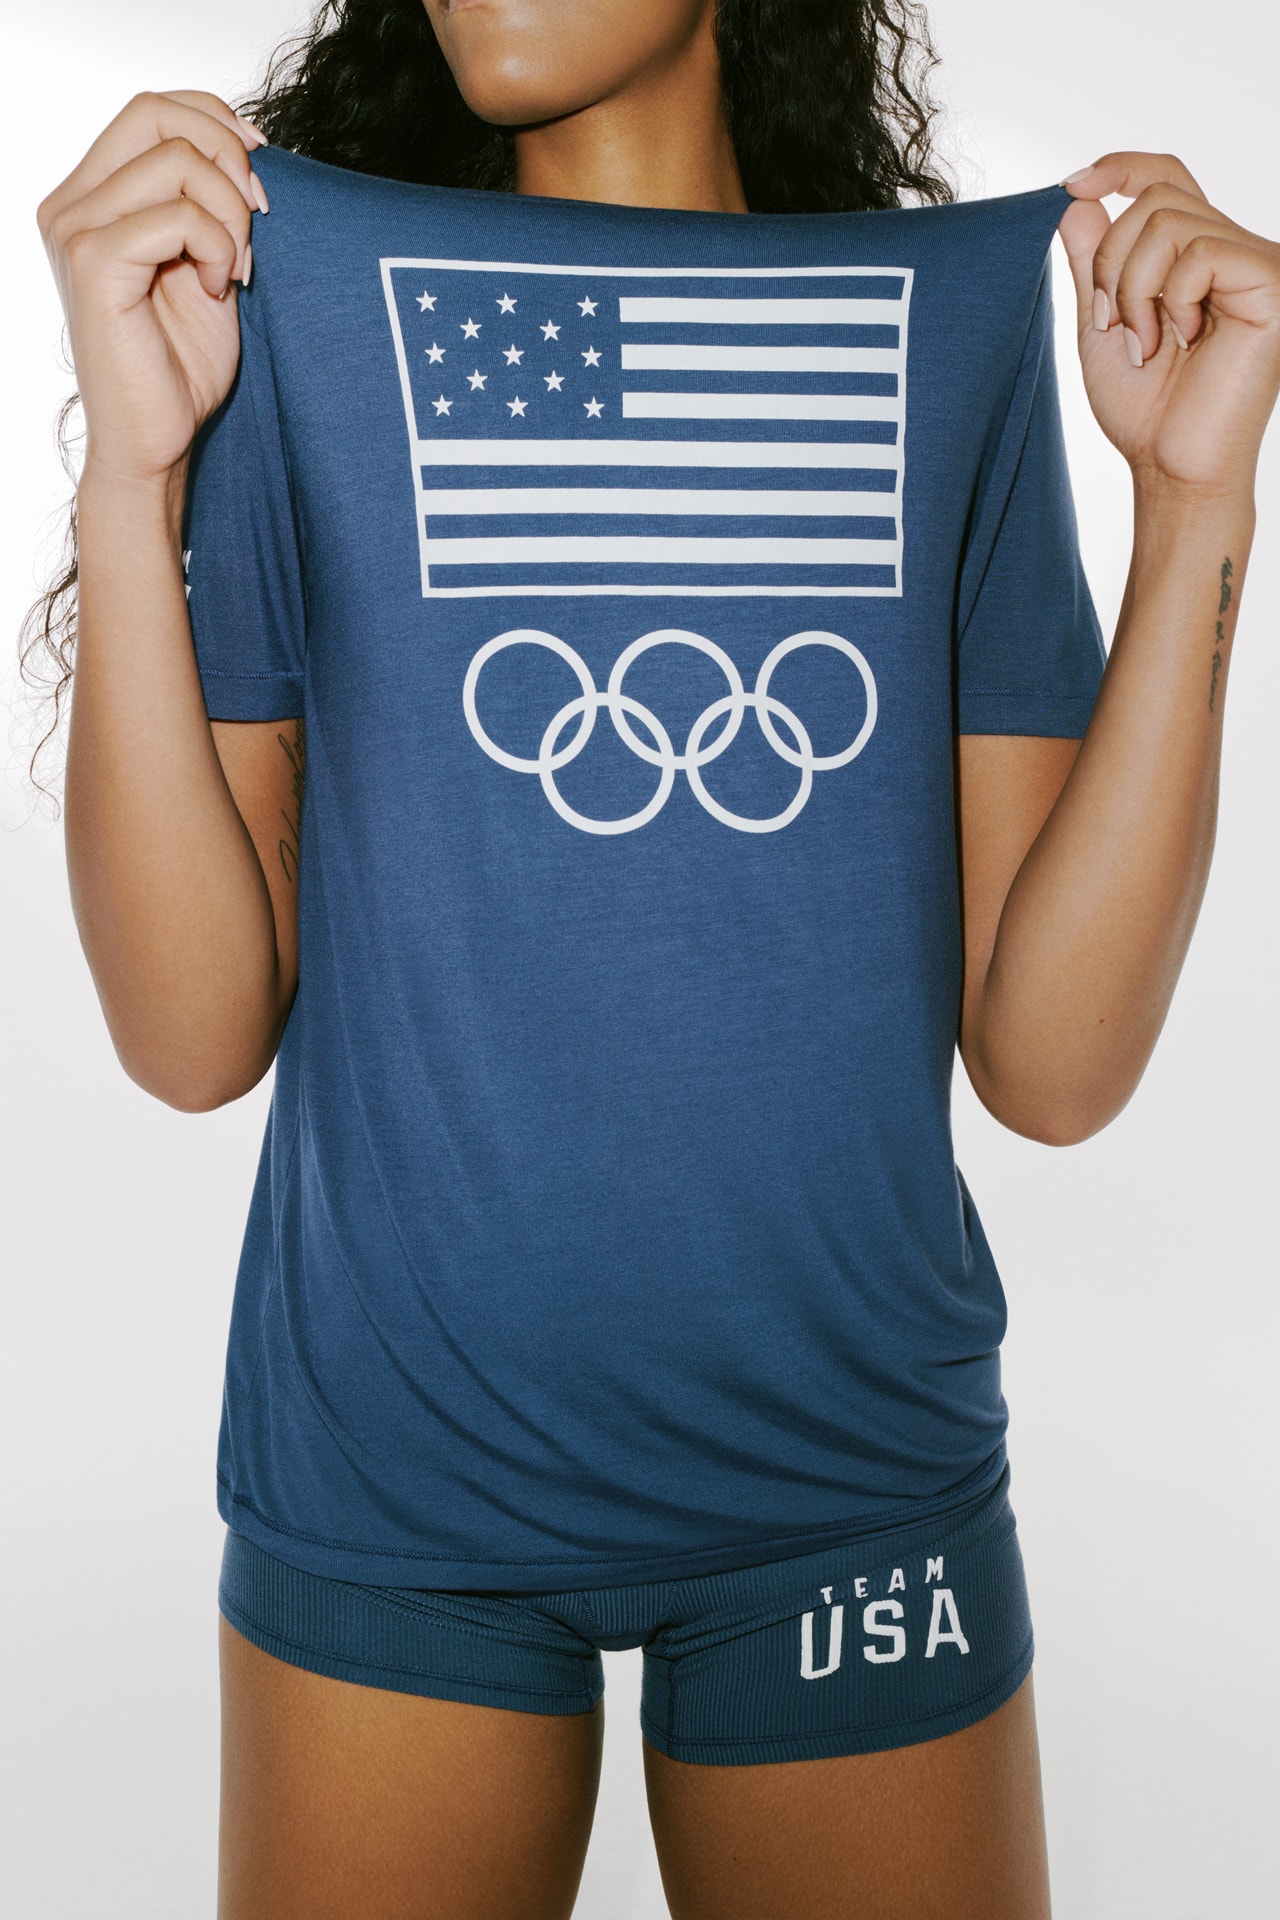 キム・カーダシアン スキムスがアメリカ代表ための公式アンダーウェアコレクションを発売 SKIMS x Team USA Collaboration Kim Kardashian West 2021 Tokyo Olympics